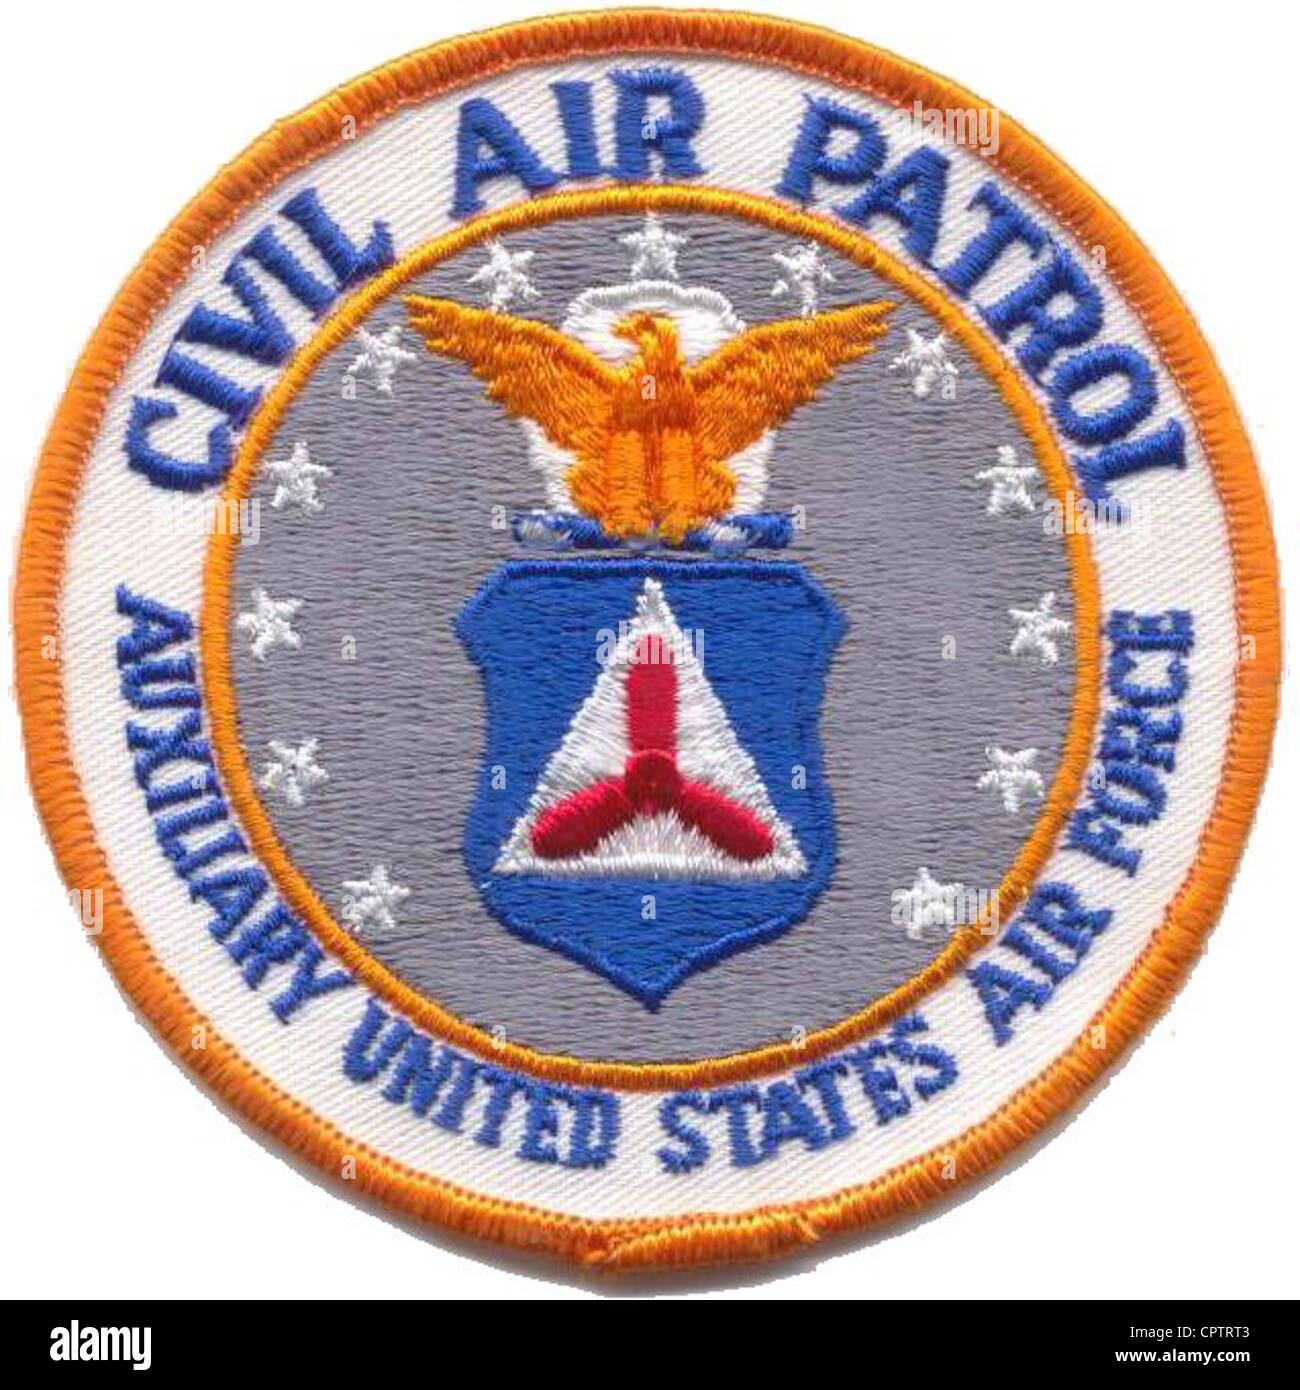 Cuatro pulgadas de la patrulla aérea civil junta de tela, autorizado para uso entre febrero de 1970 y febrero de 1983. Foto de stock